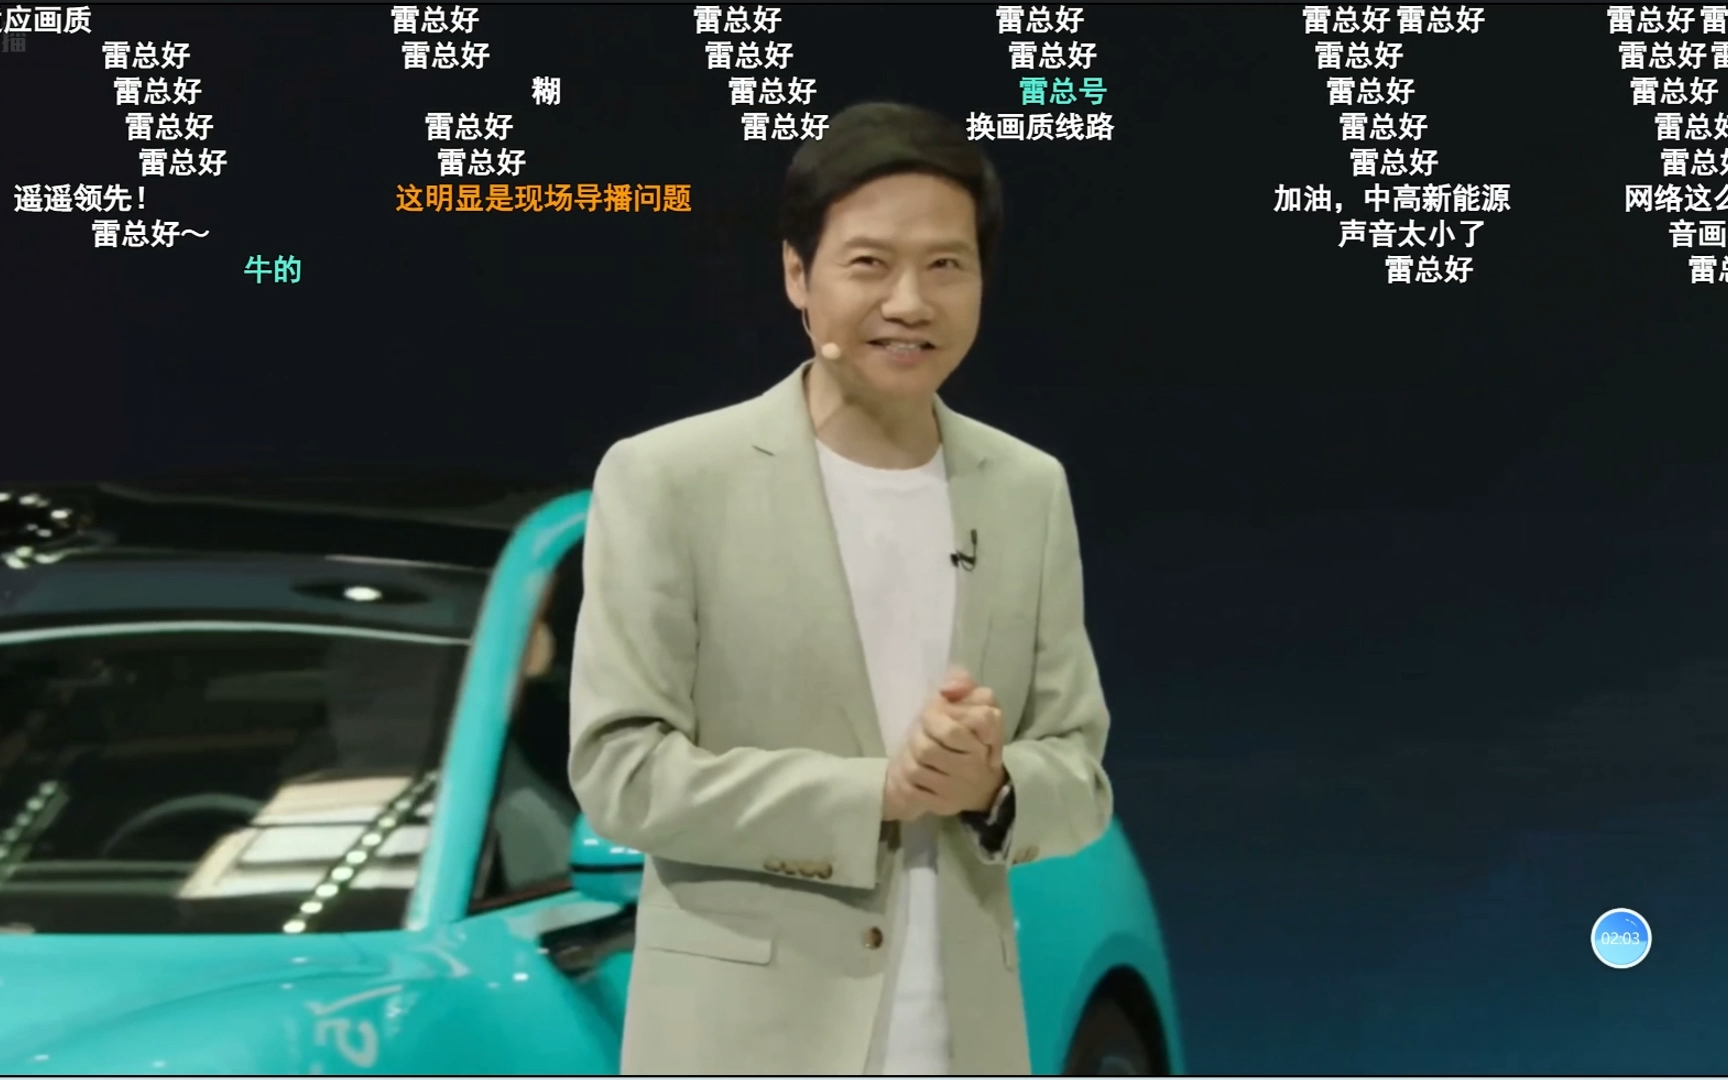 雷总在小米北京车展发布会上讲友商截胡小米SU7的政策